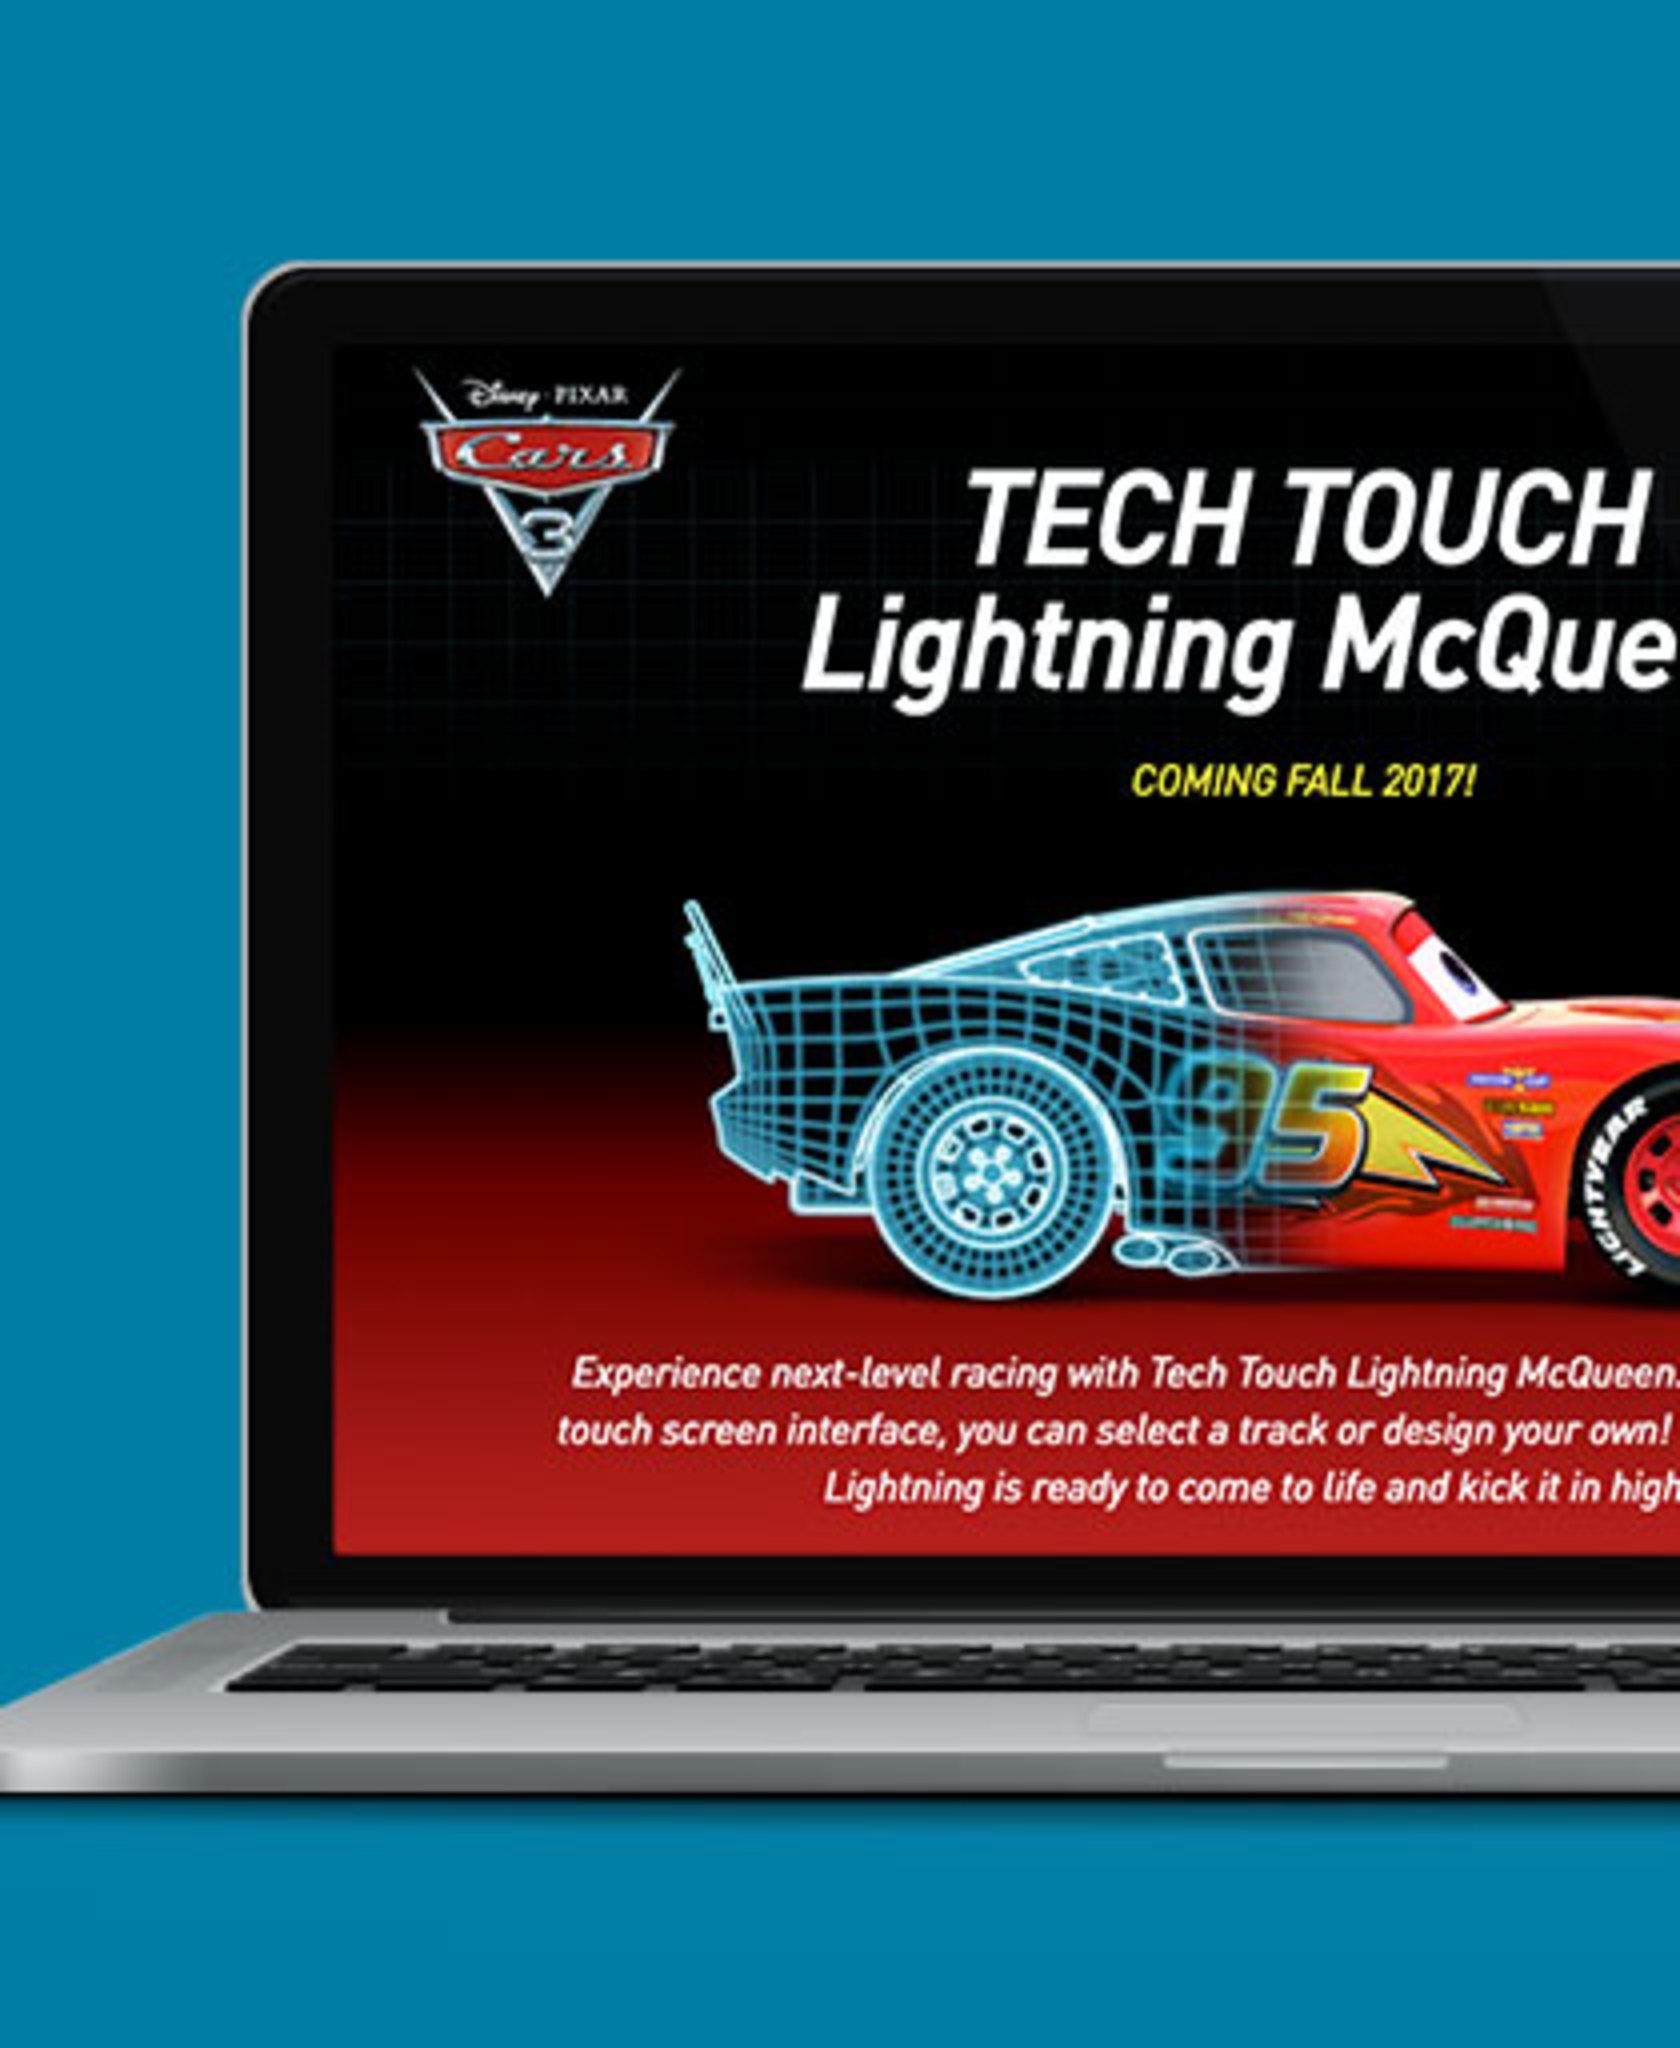 Tech Touch Lightning McQueen